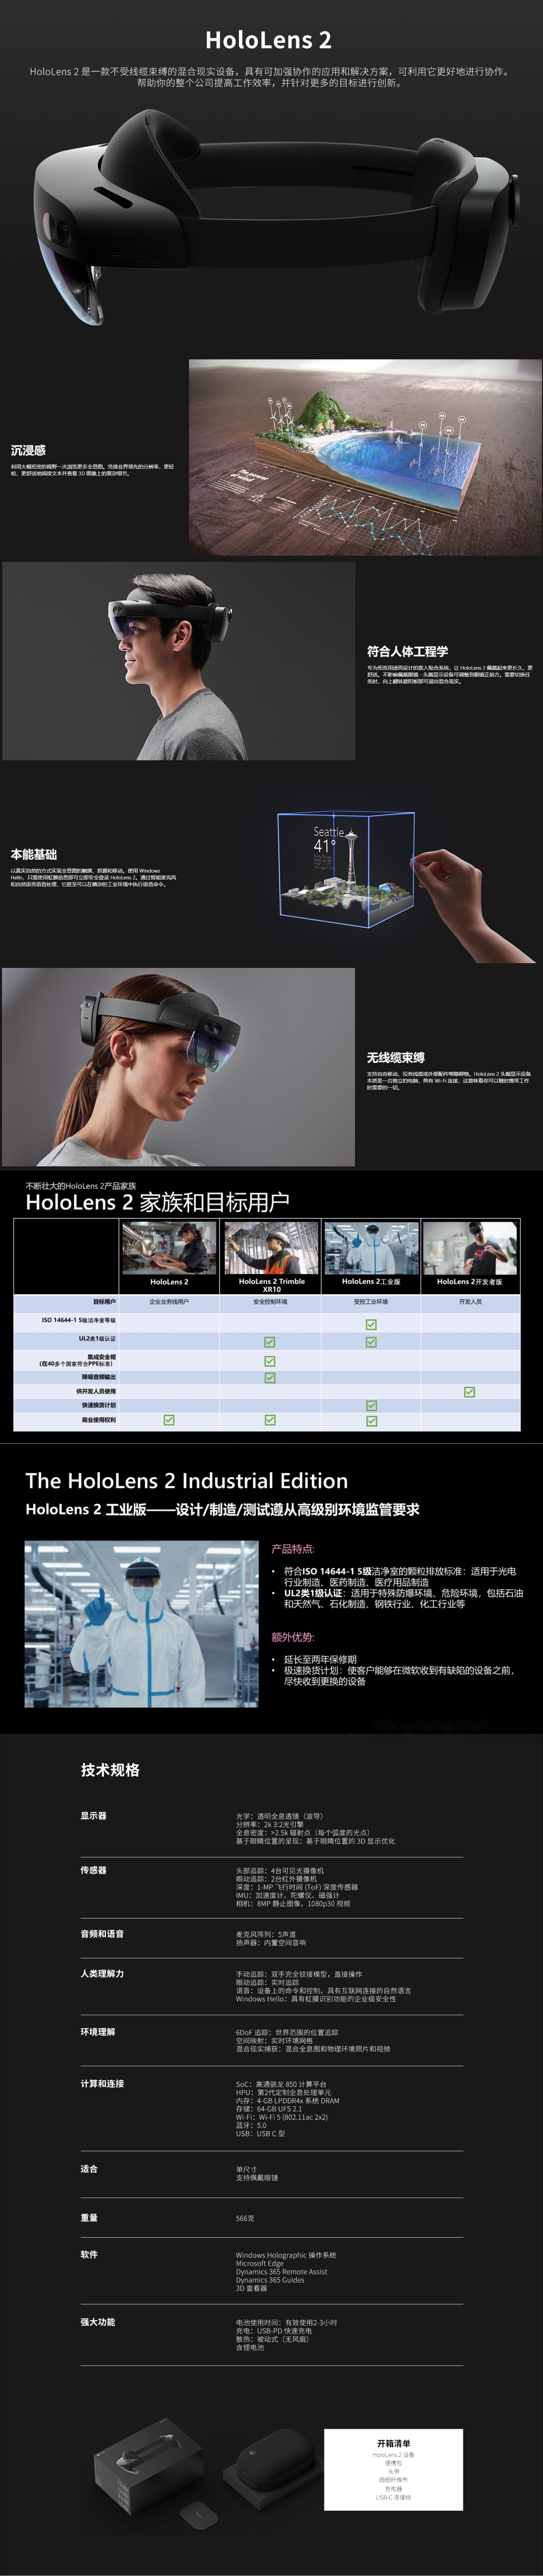 HoloLens 2 MR眼镜